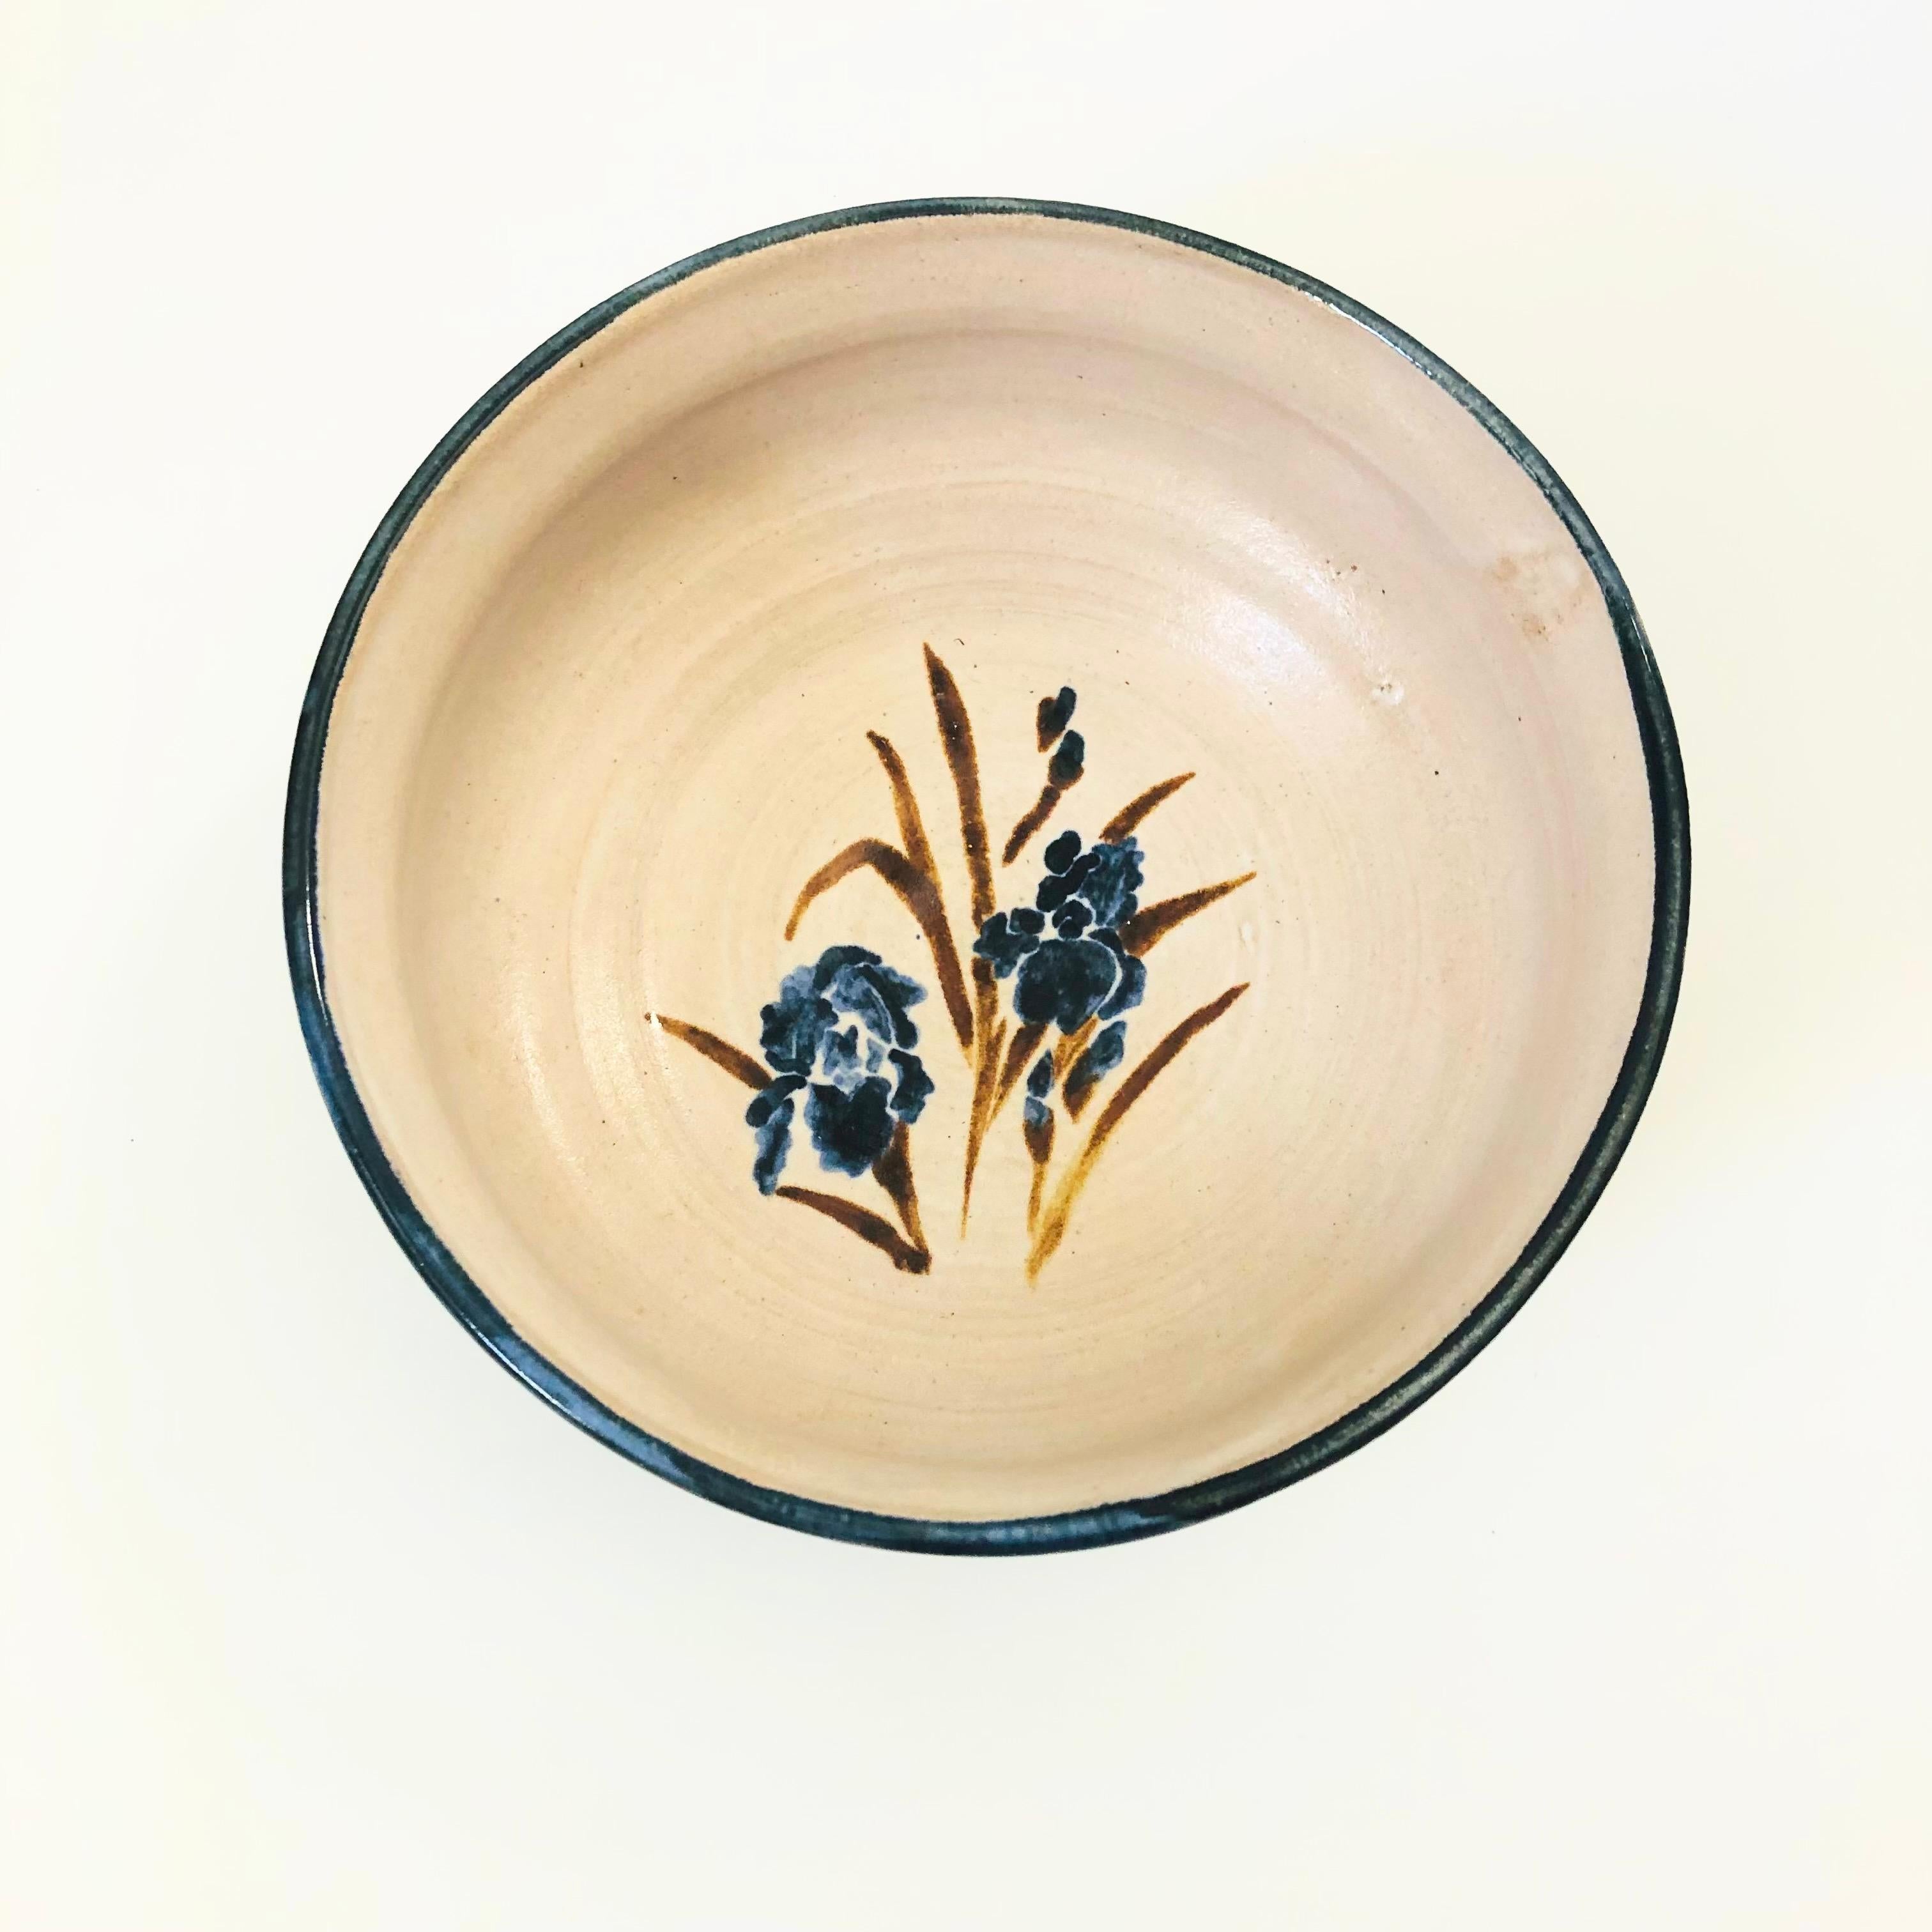 Eine schöne Schale aus Studio-Keramik im Vintage-Stil. Blass violett-graue Glasur mit einem schönen handgemalten Iris-Muster in der Mitte in blauer und brauner Glasur. Dunkelblaue Glasur am Rand. Schöne Größe, perfekt zum Servieren einer Vielzahl